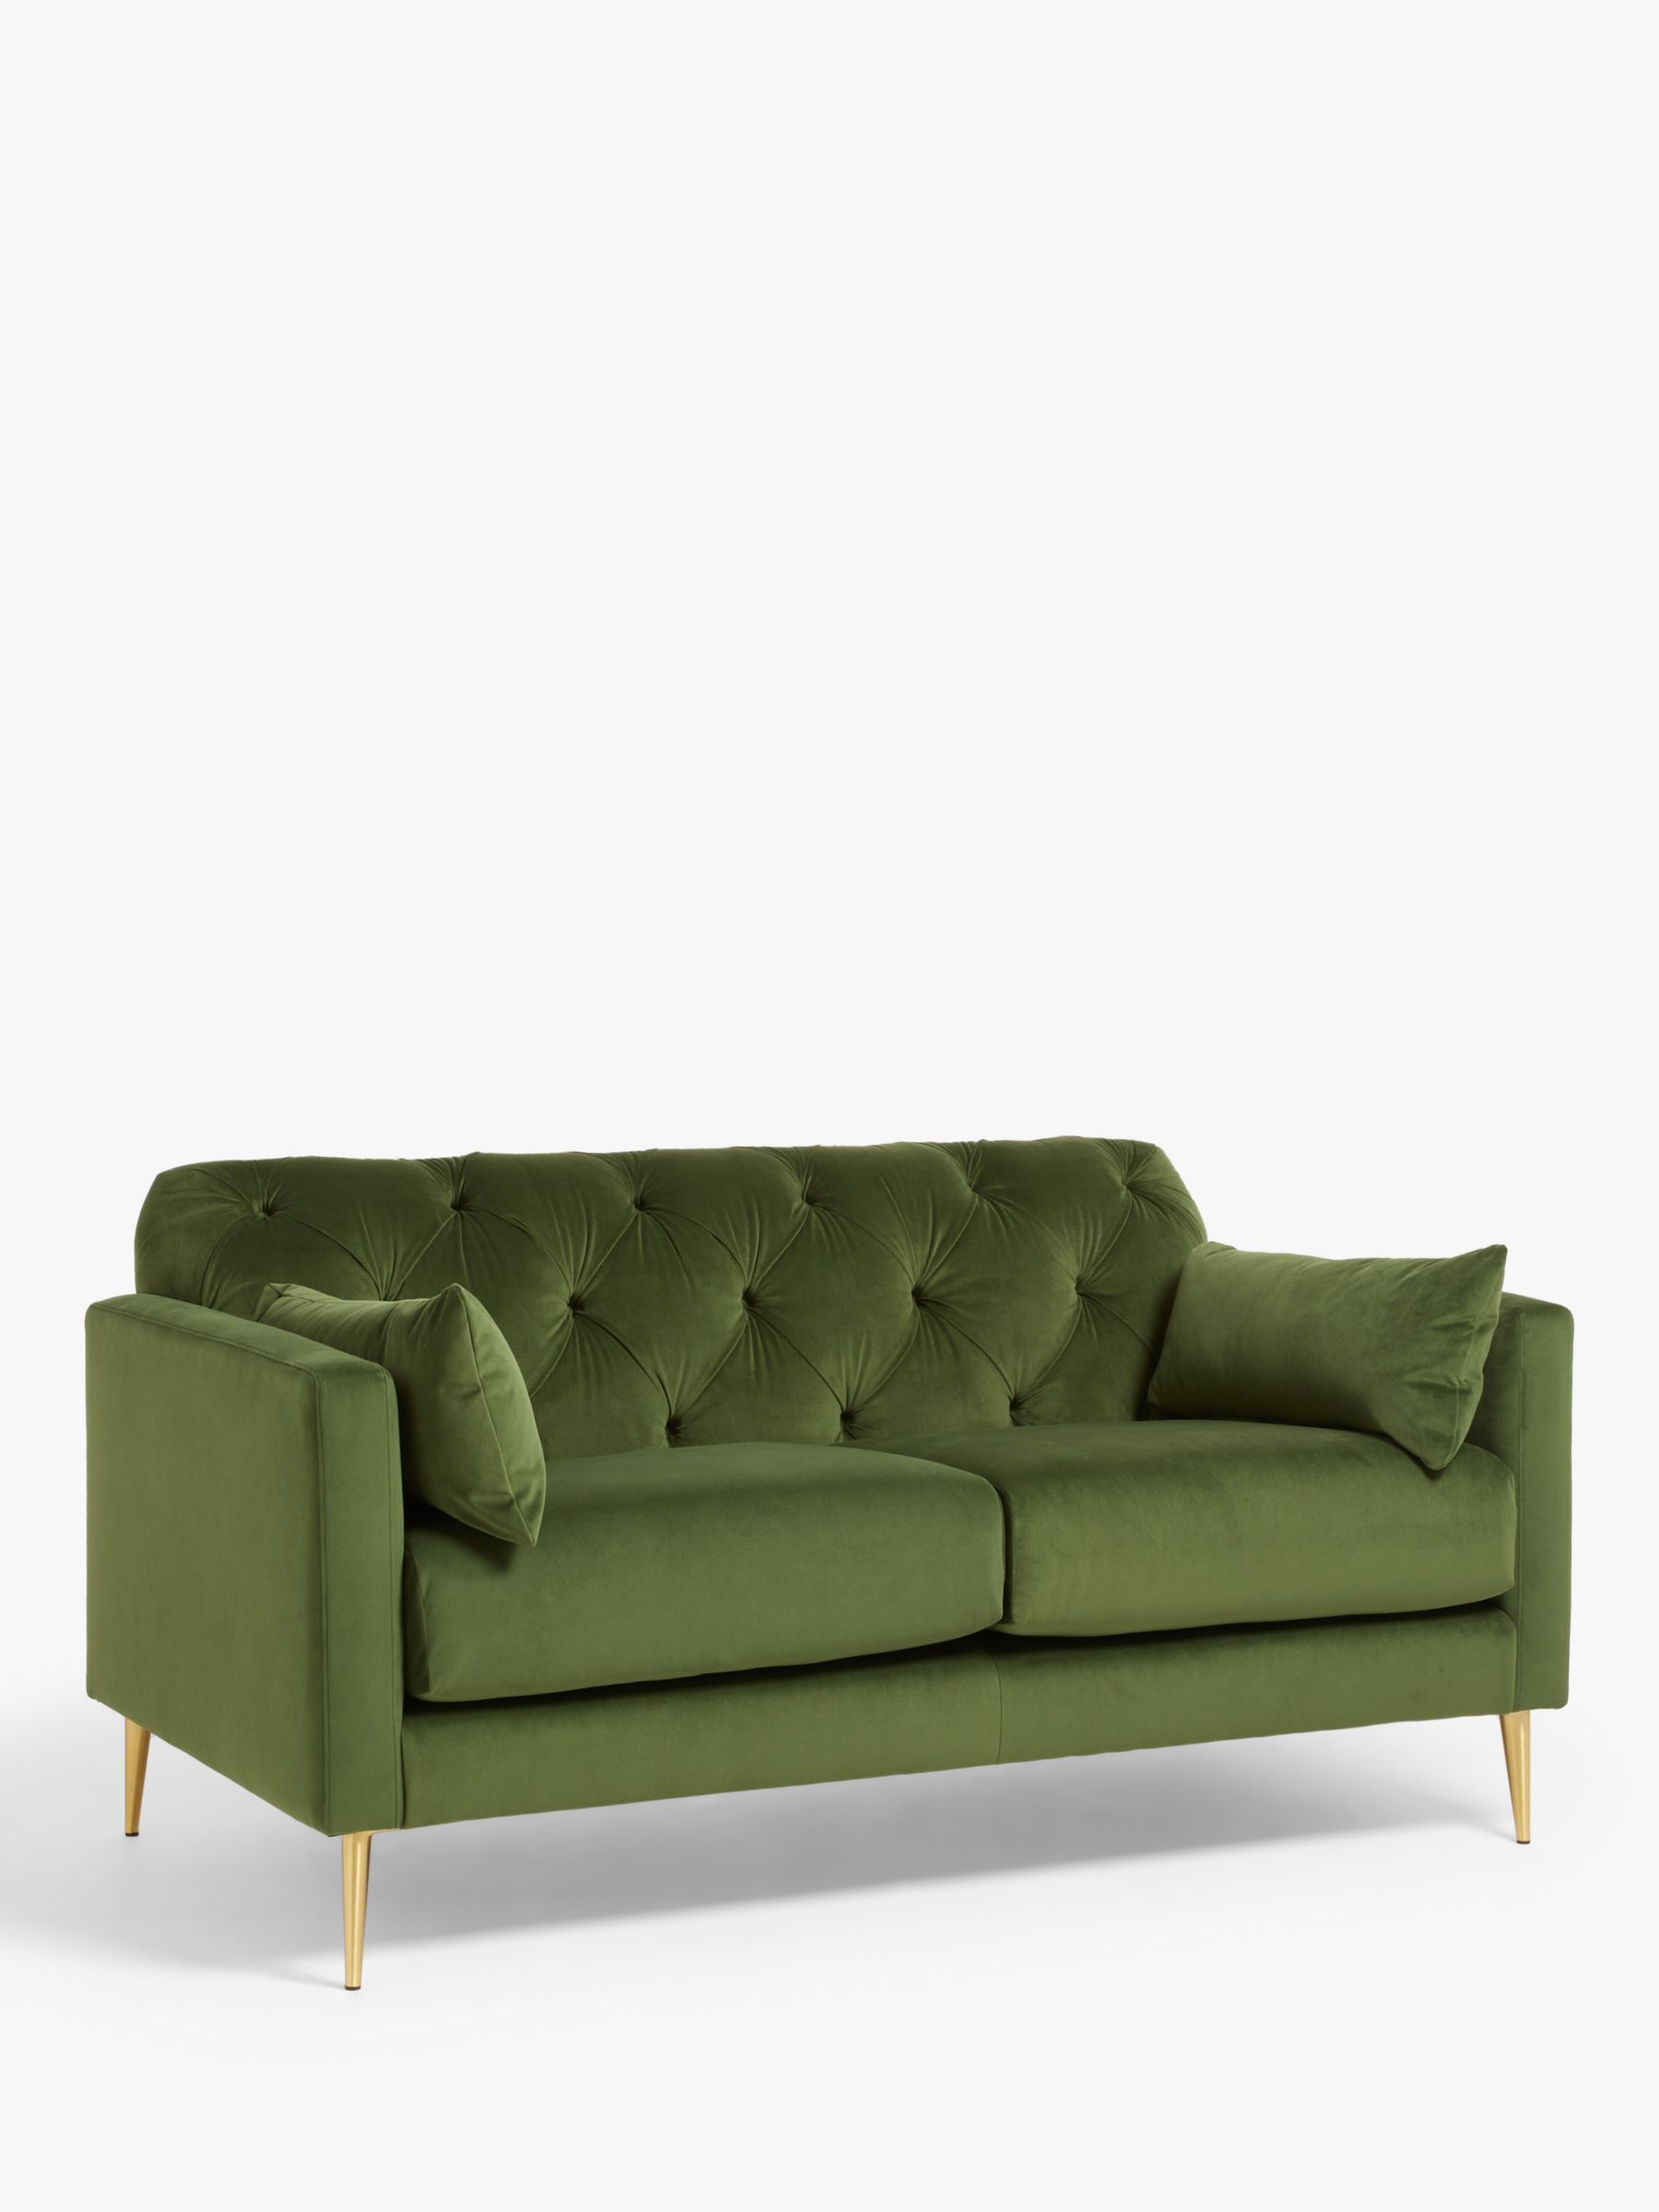 Photo of Swoon mendel medium 2 seater sofa gold leg fern green velvet